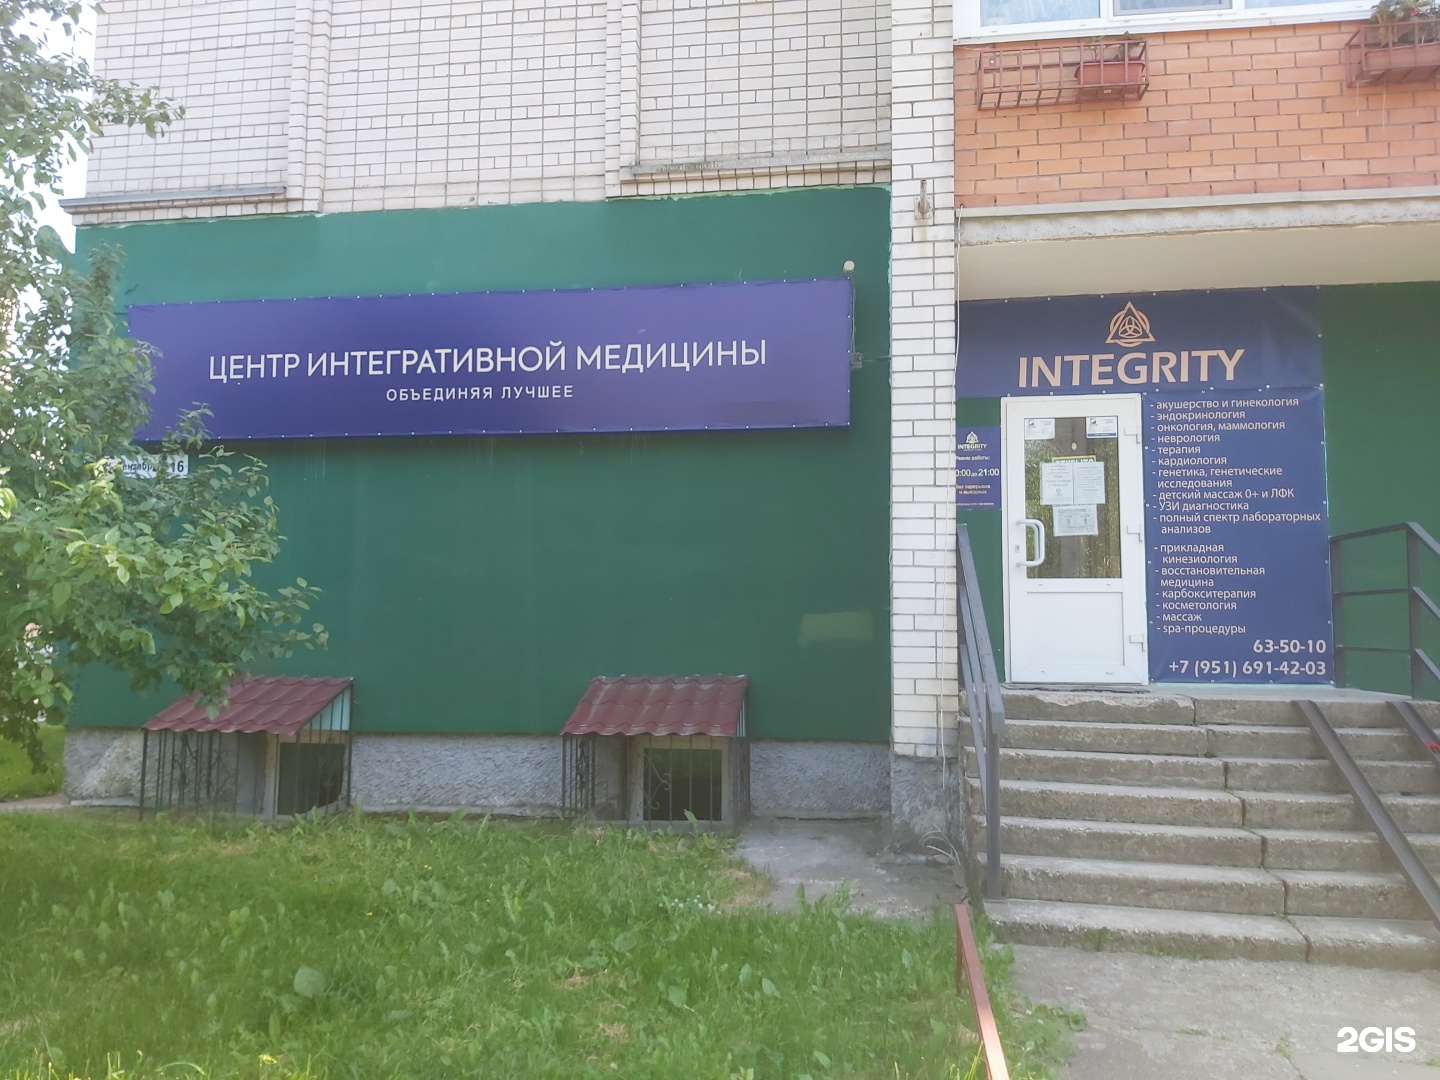 Центр охраны здоровья смоленск